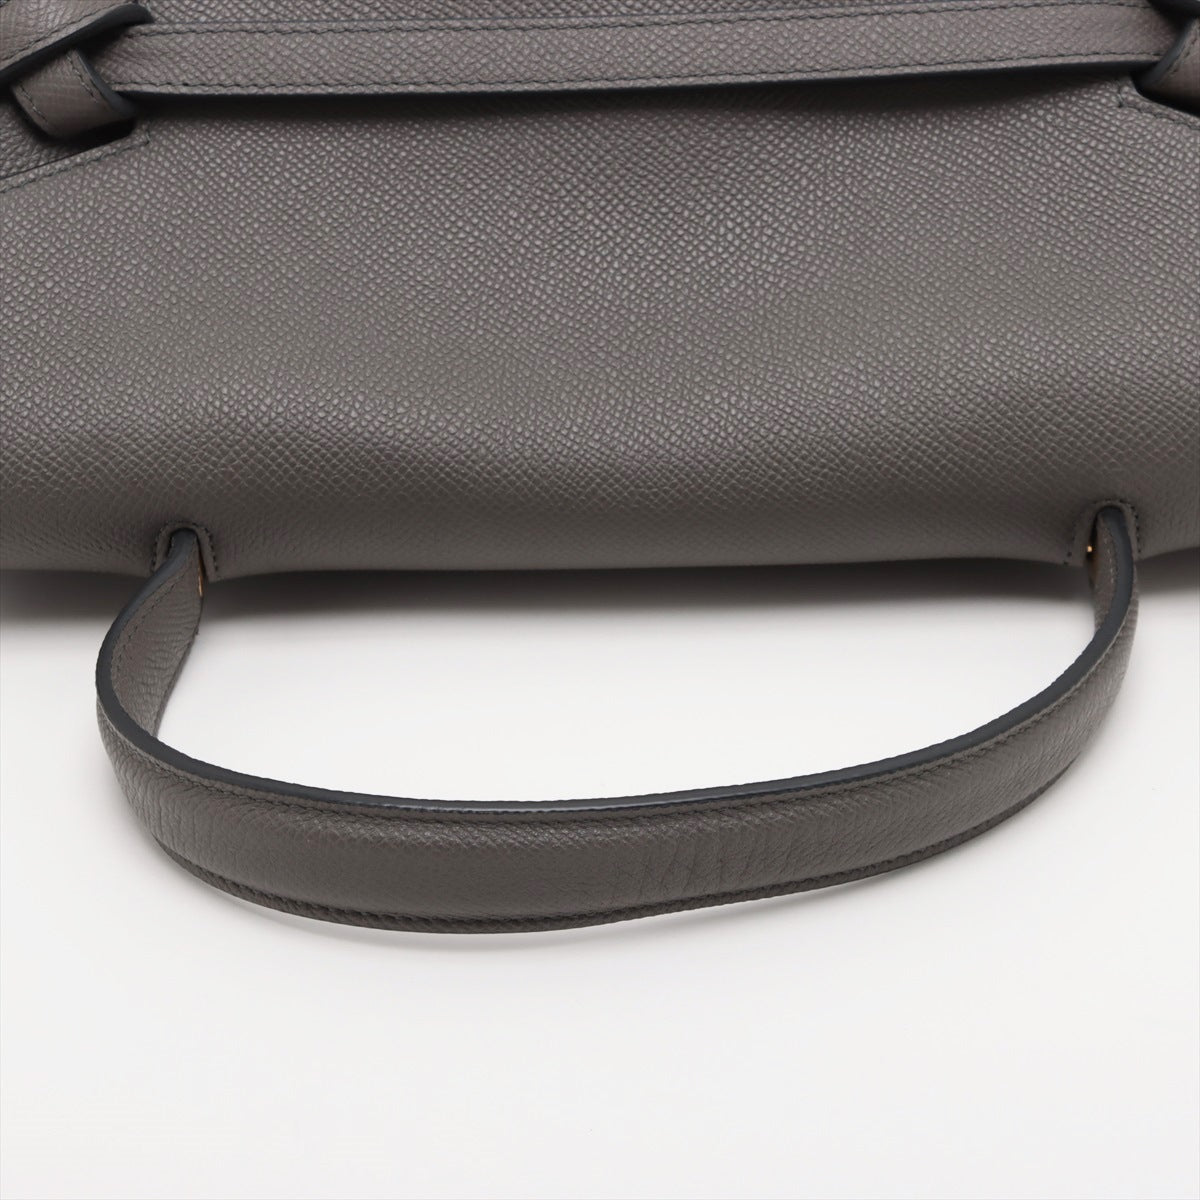 CELINE Belt Bag Leather 2way handbag Grey